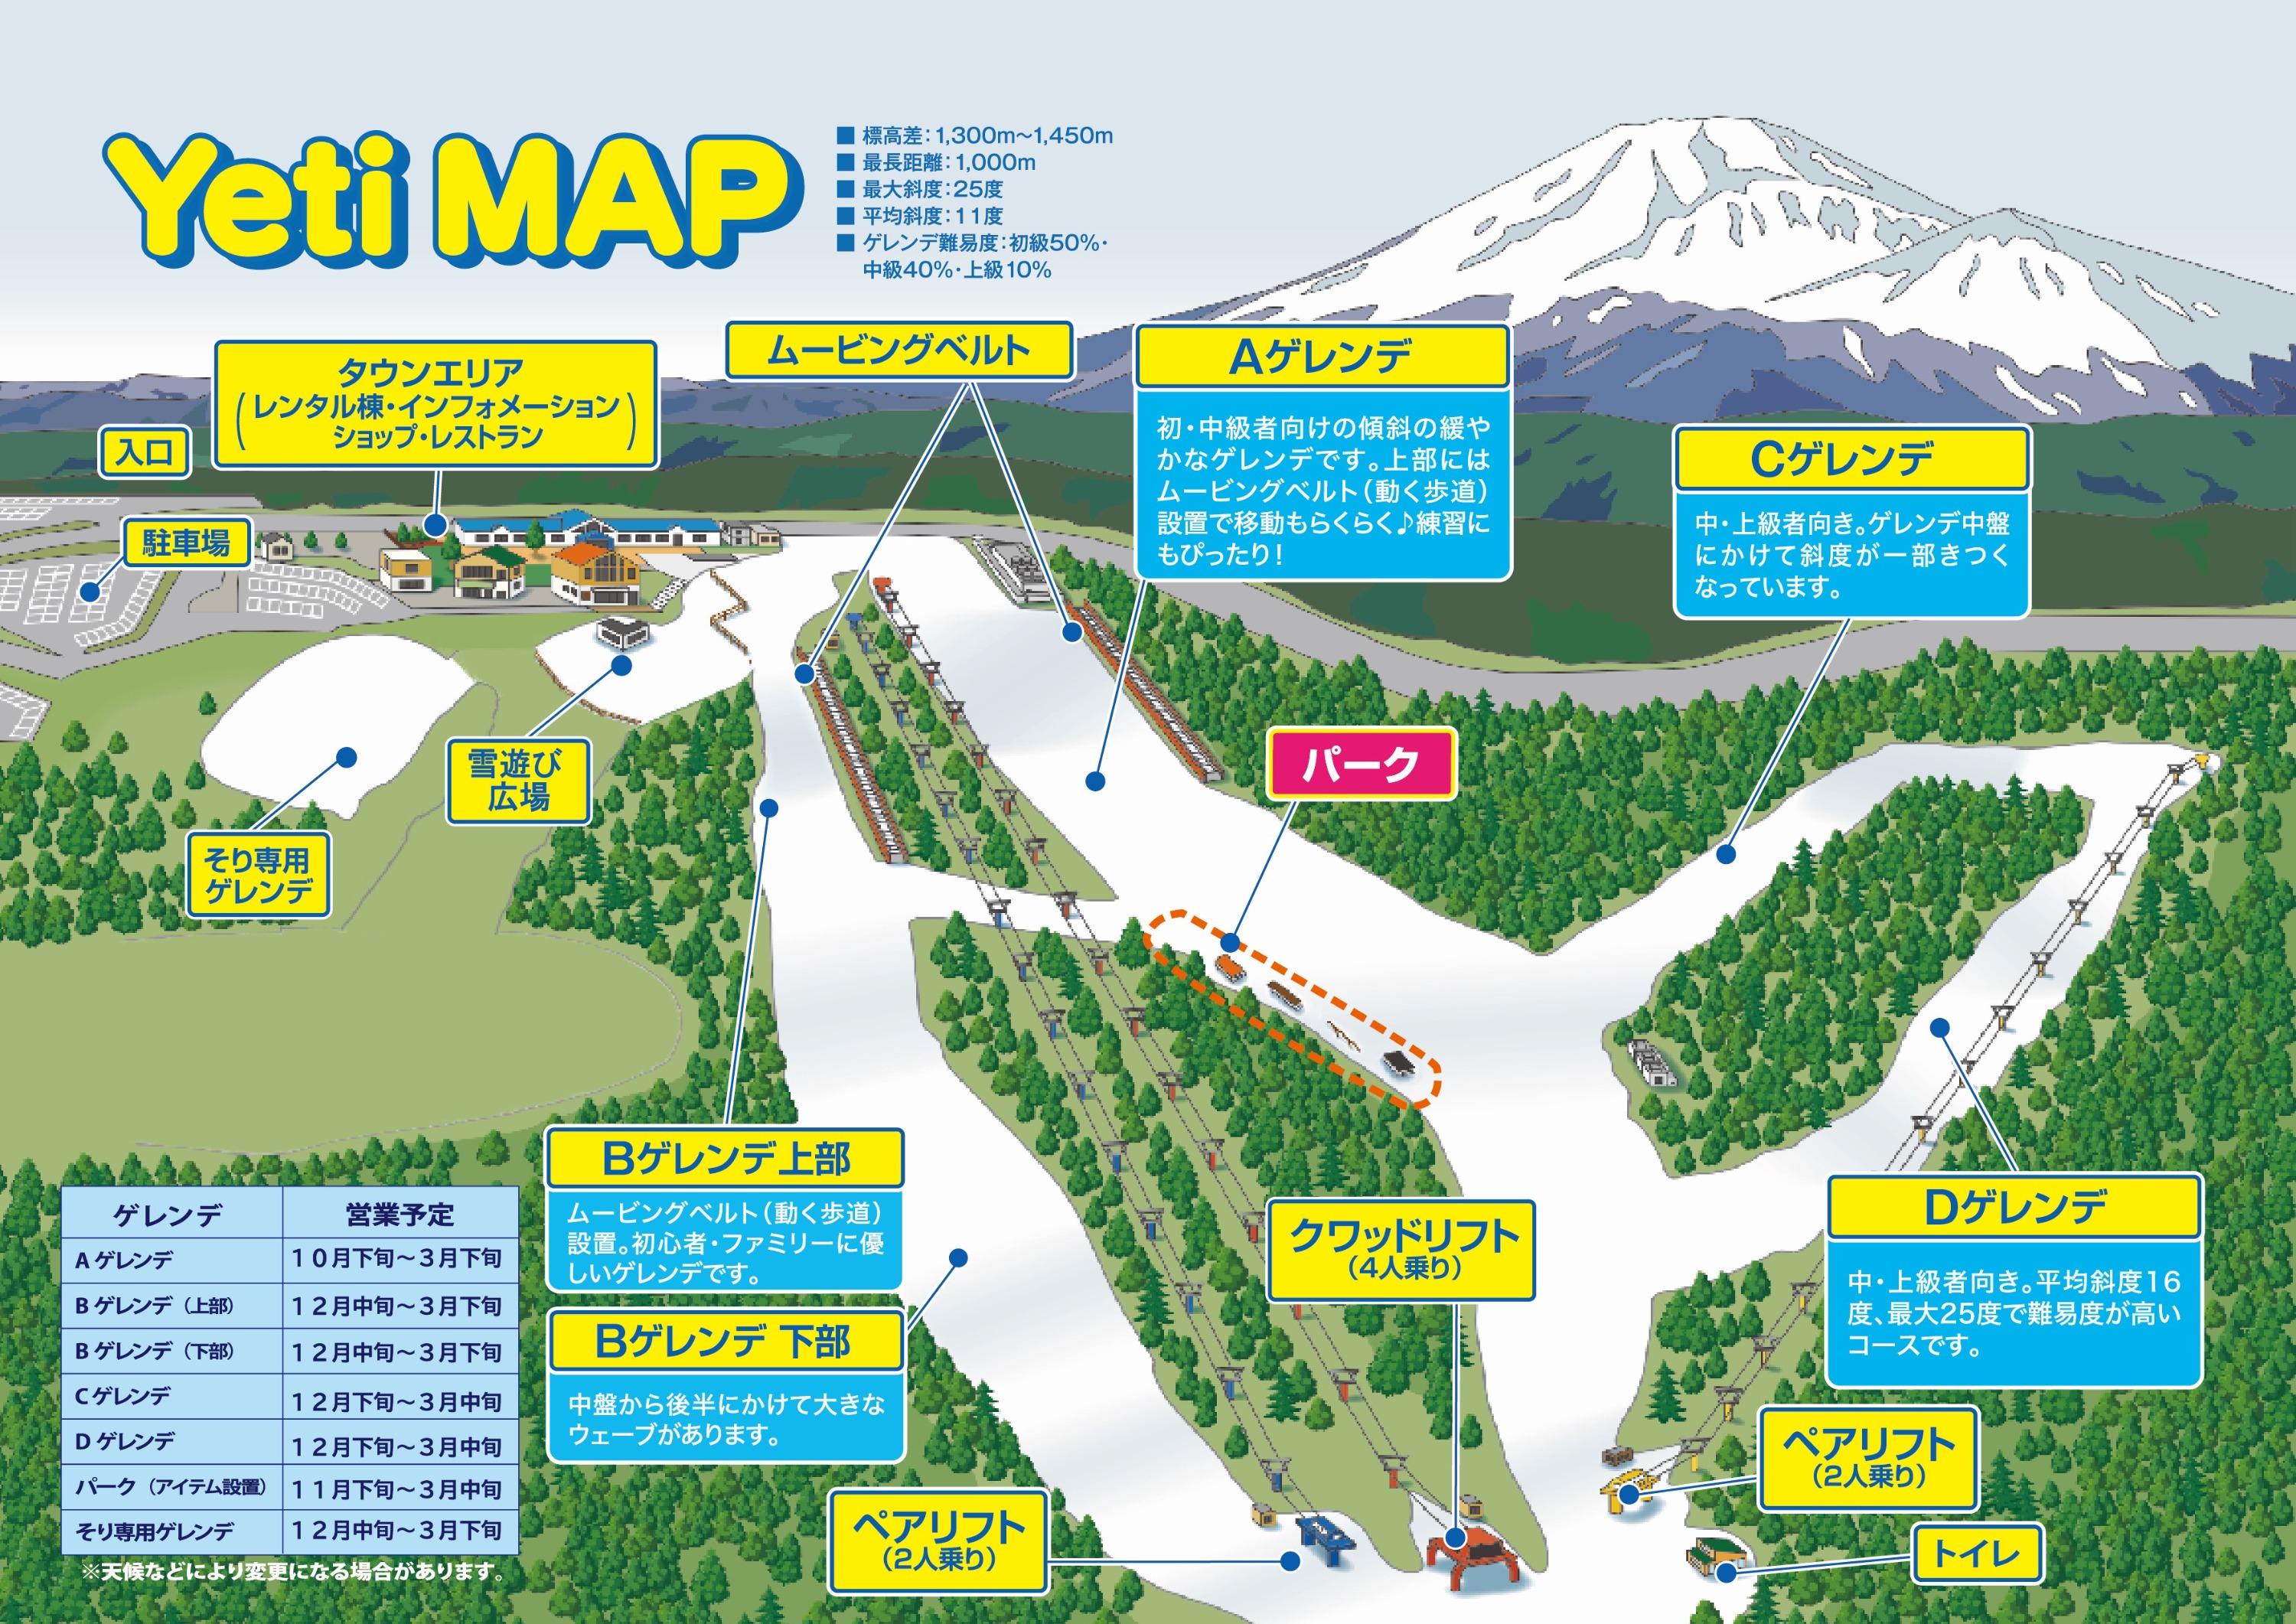 Mount Fuji Second Station Yeti Ski Resort & Nikki Hot Spring Skiing Day Trip | Departing from Tokyo